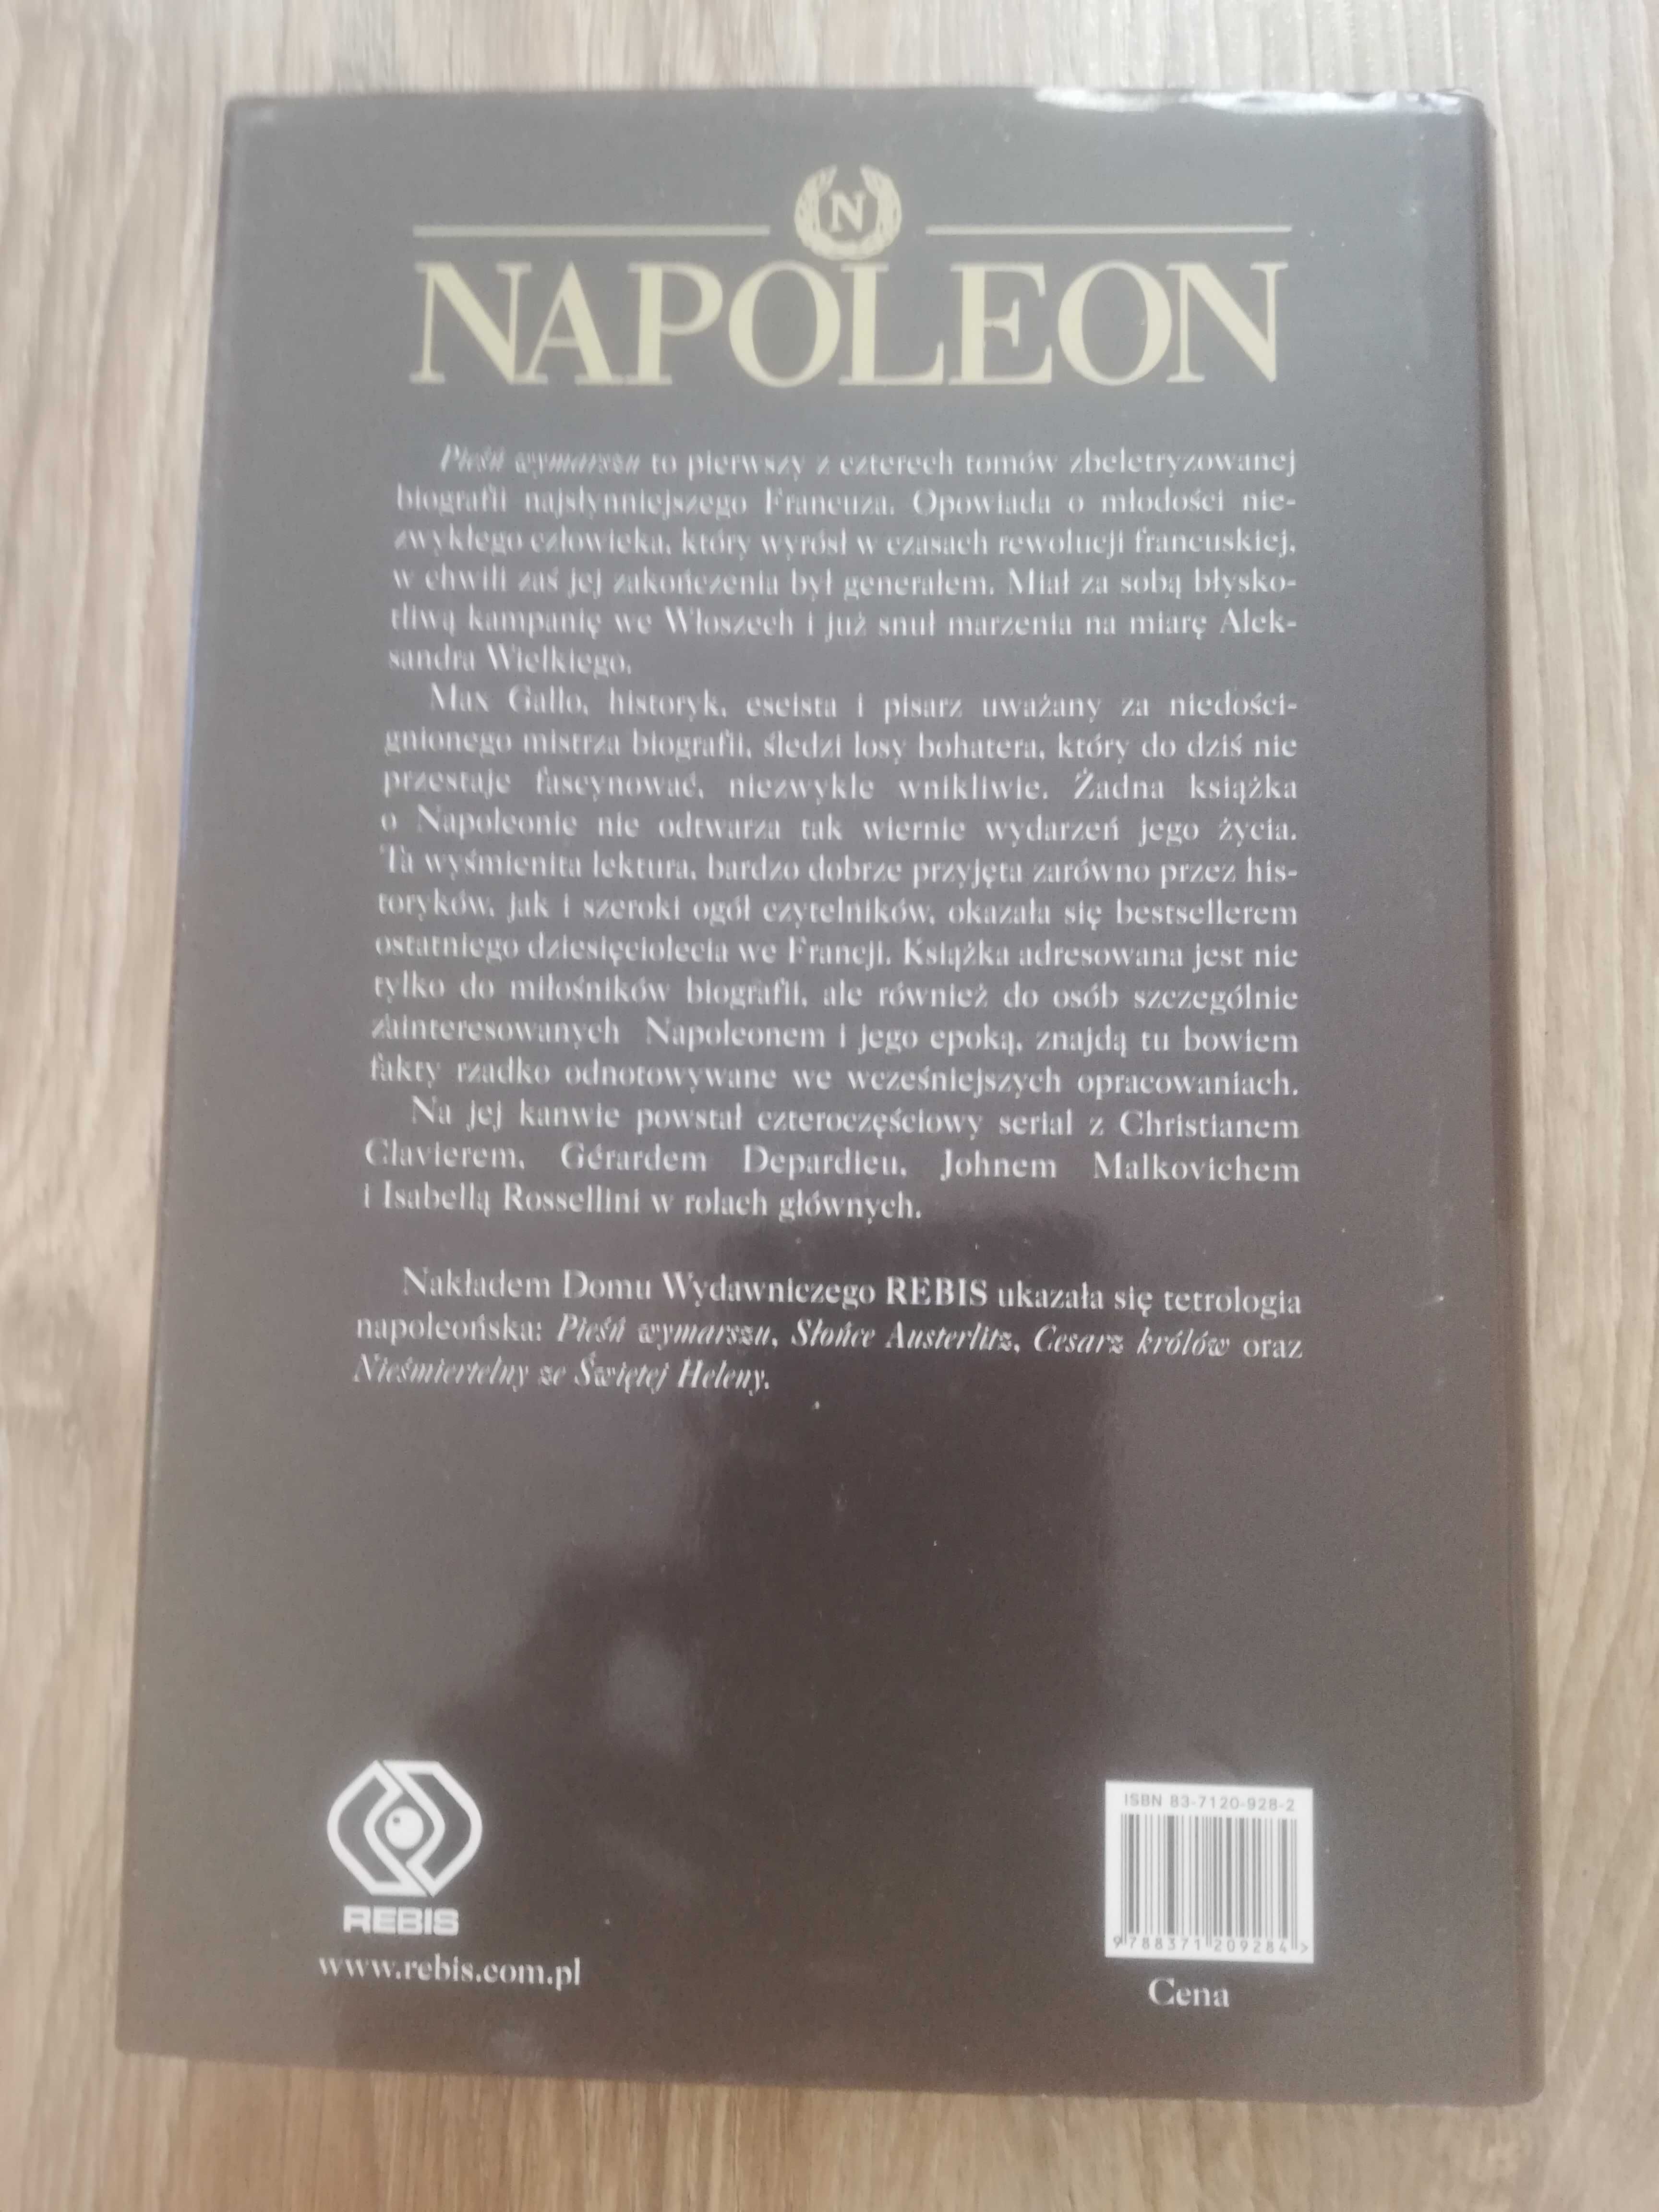 Książka "Napoleon" Pieśni wymarszu Max Gallo